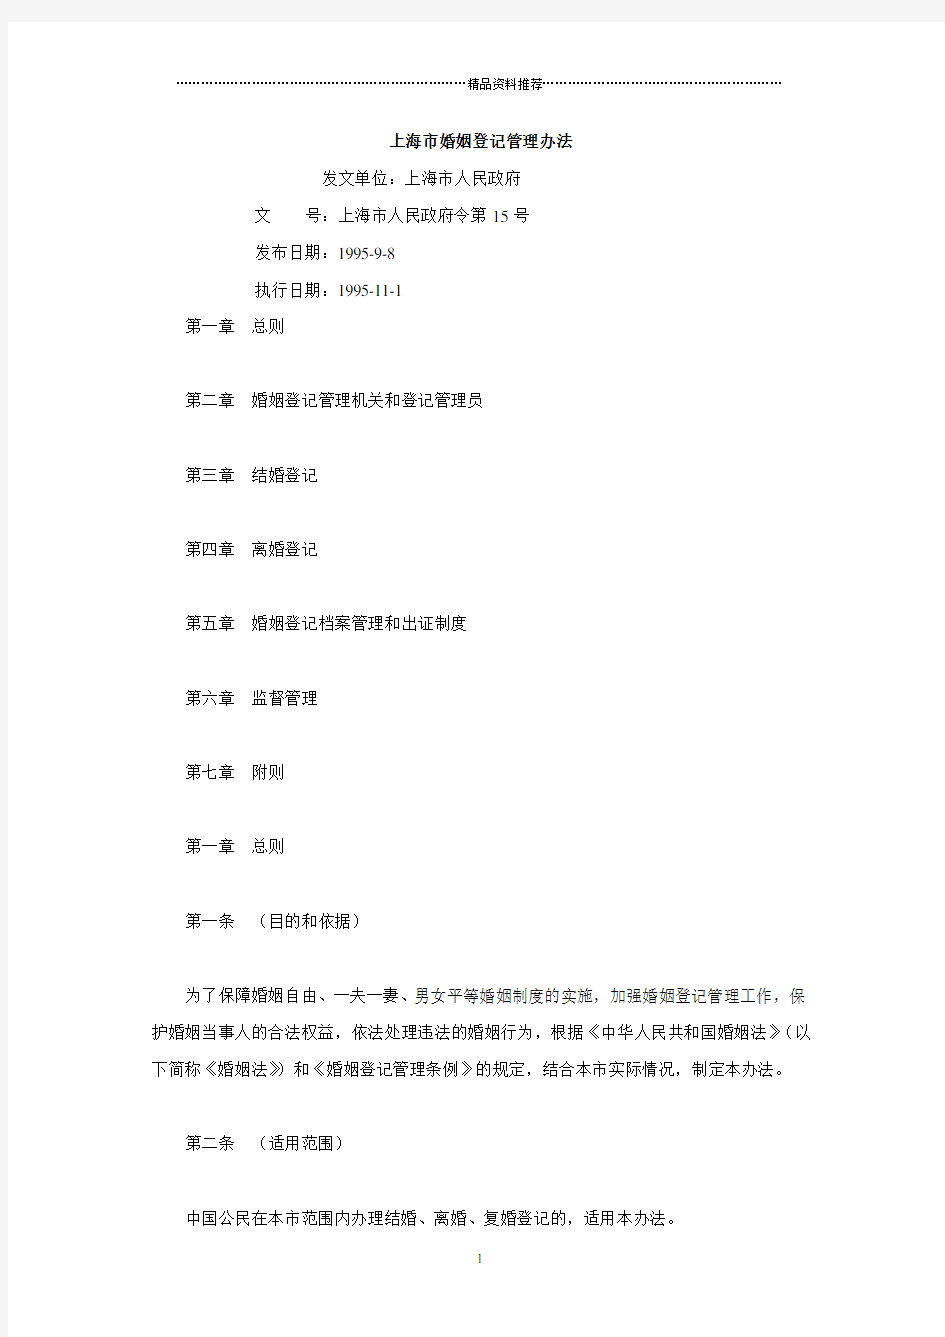 上海市婚姻登记管理办法